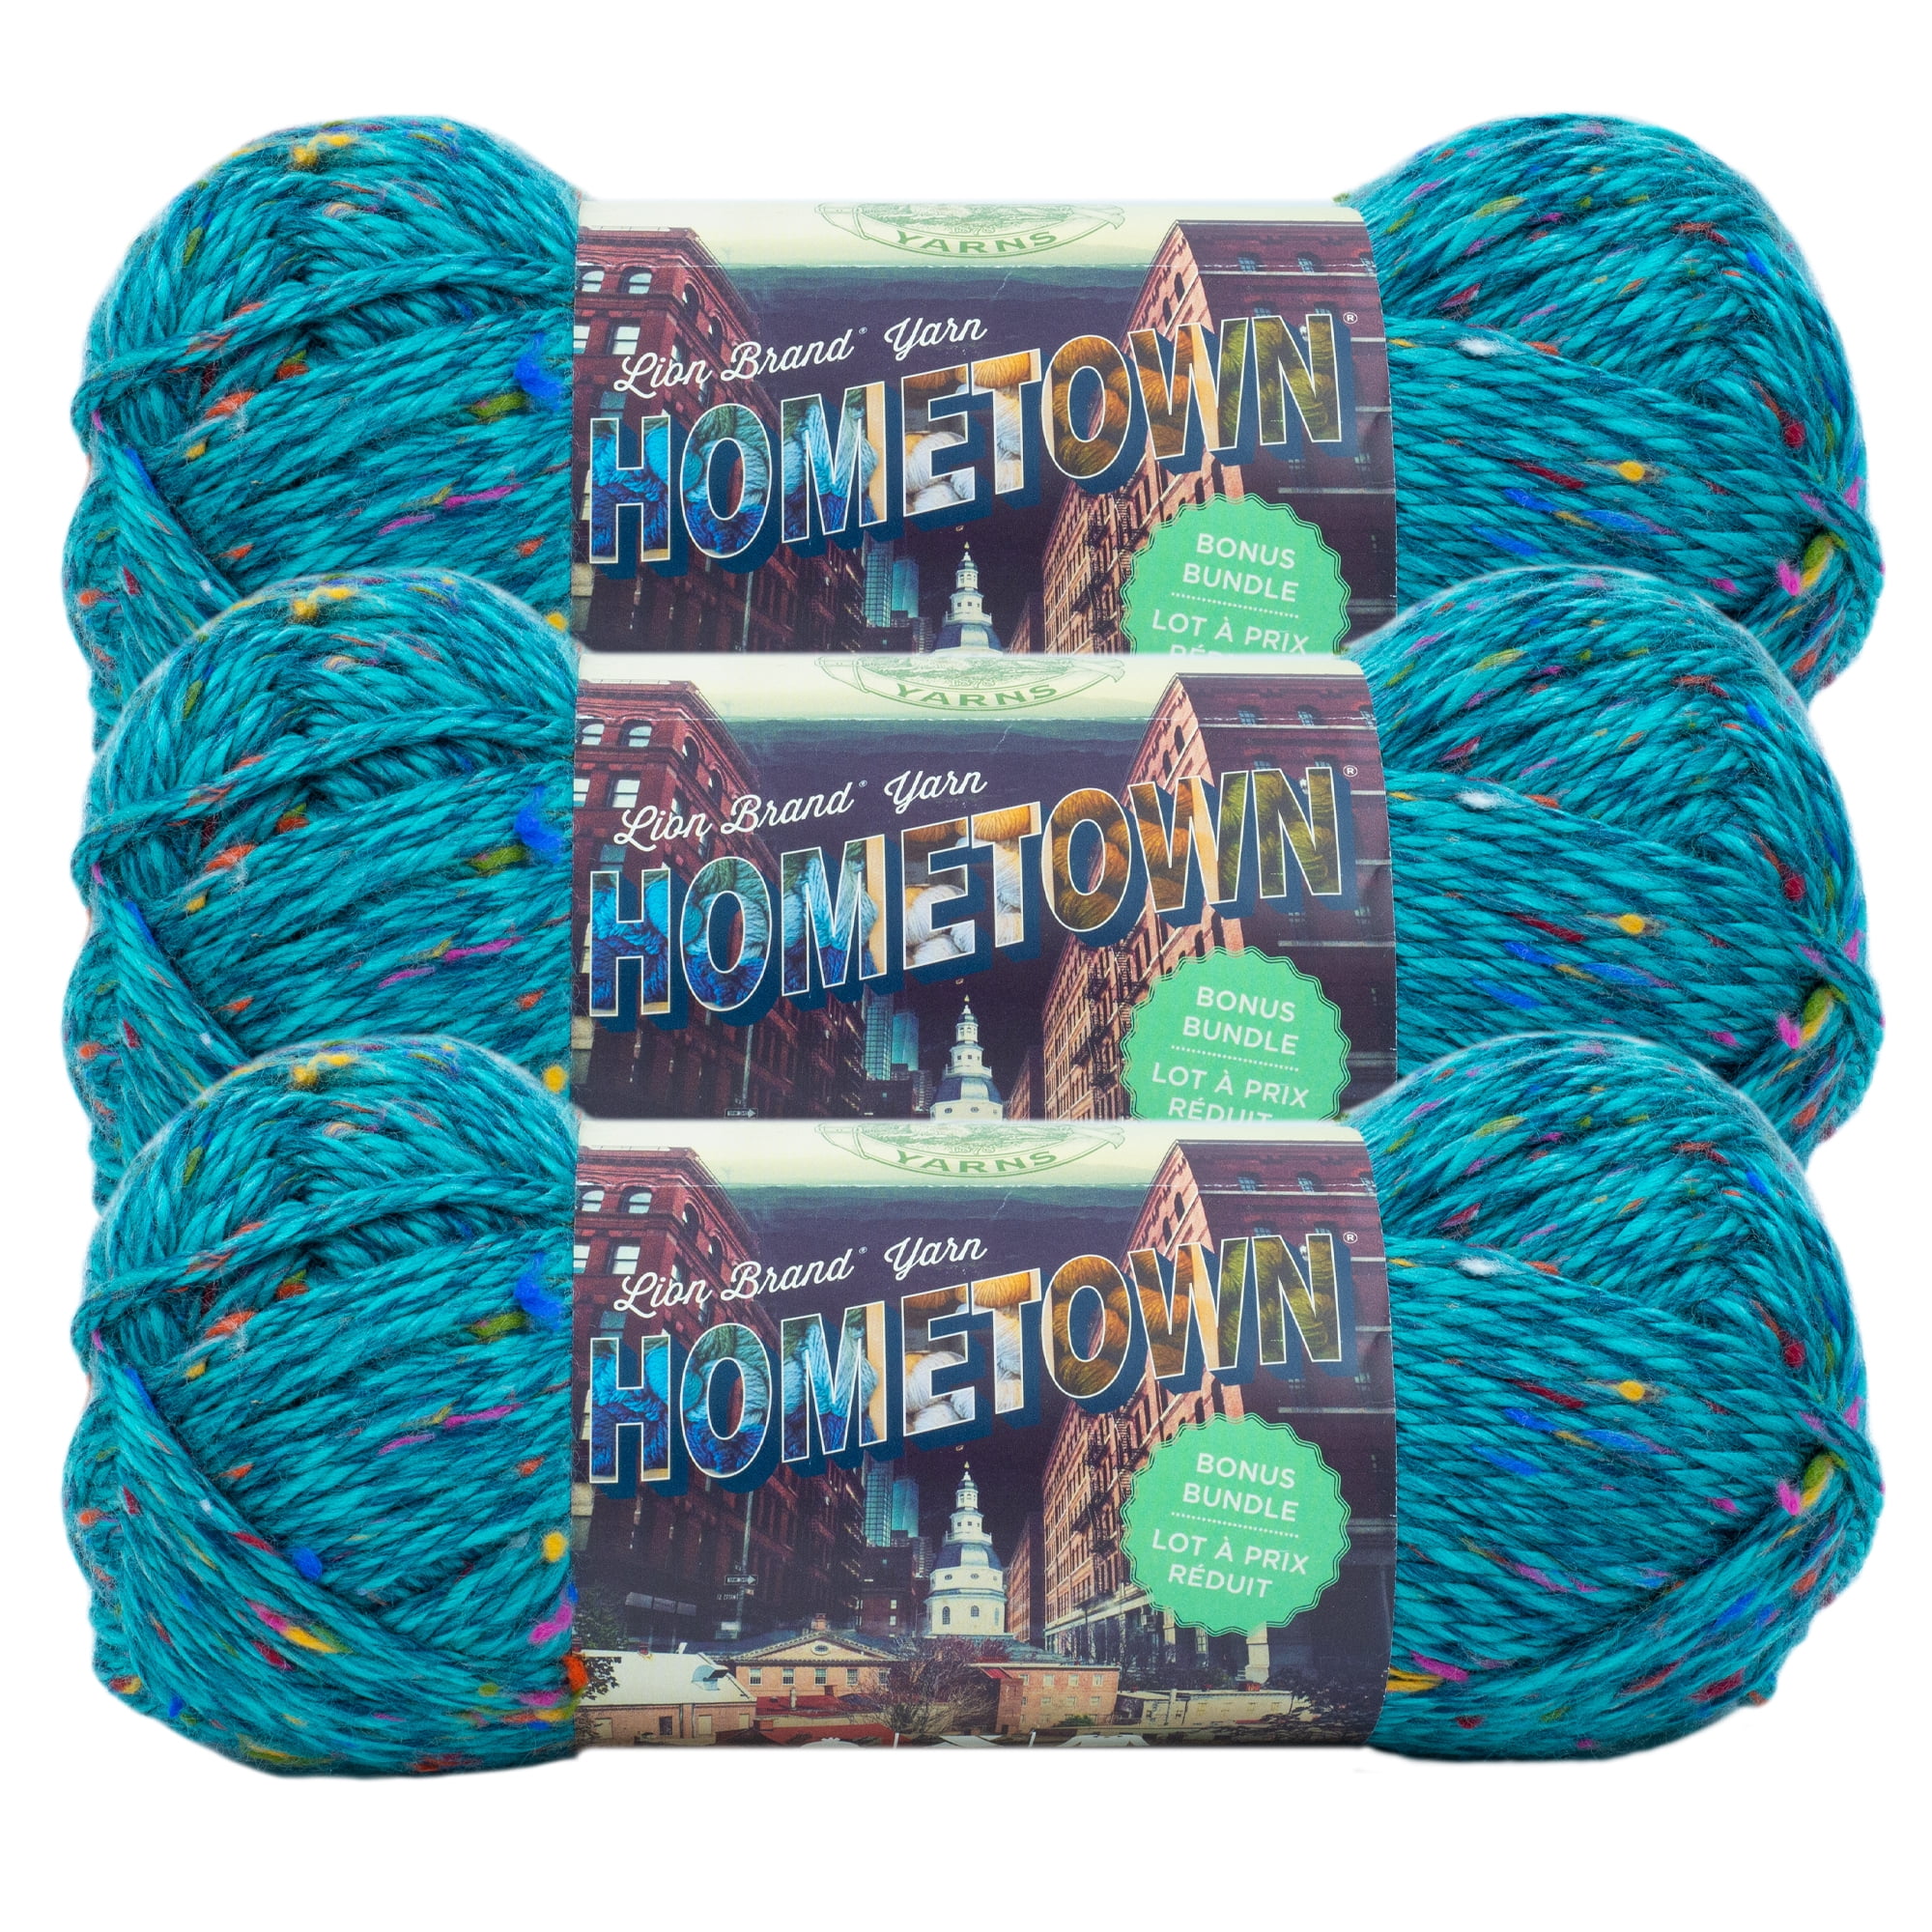 Crochet Bowls - Version 1 – Lion Brand Yarn